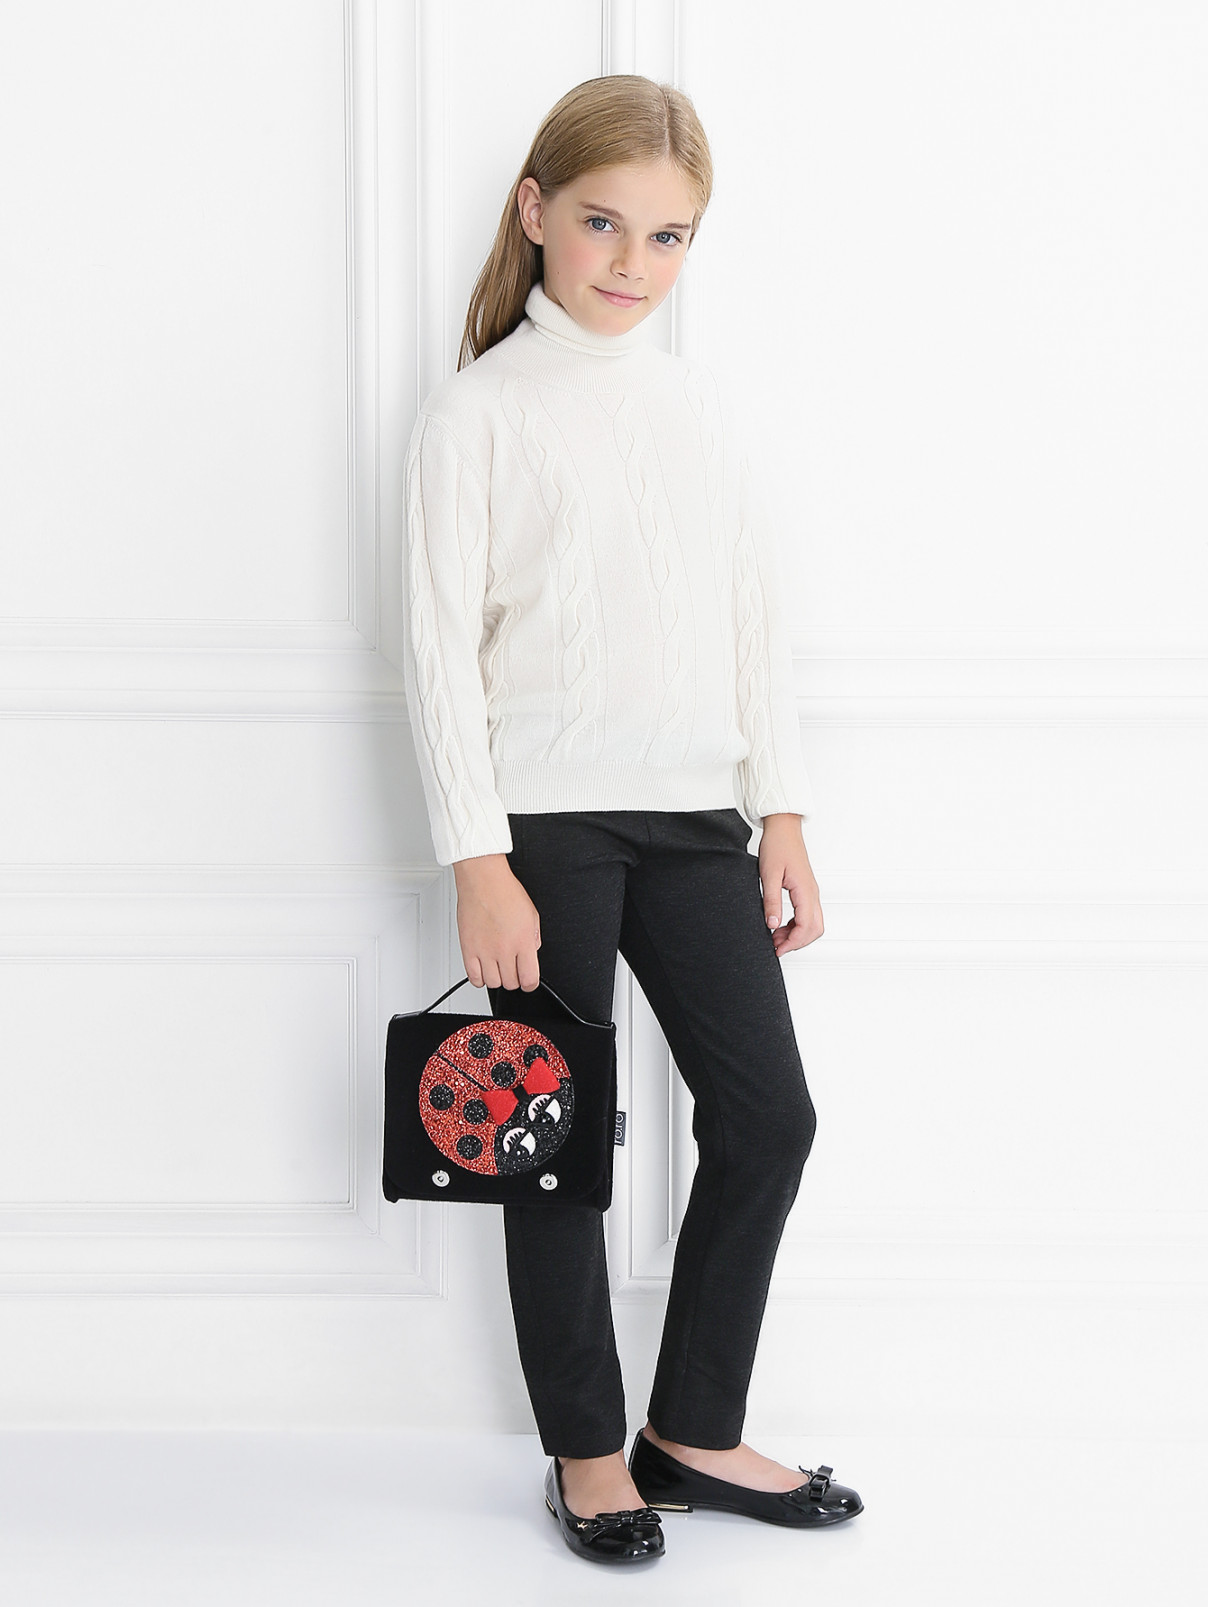 Узкие брюки с боковыми карманами Aletta Couture  –  Модель Общий вид  – Цвет:  Серый